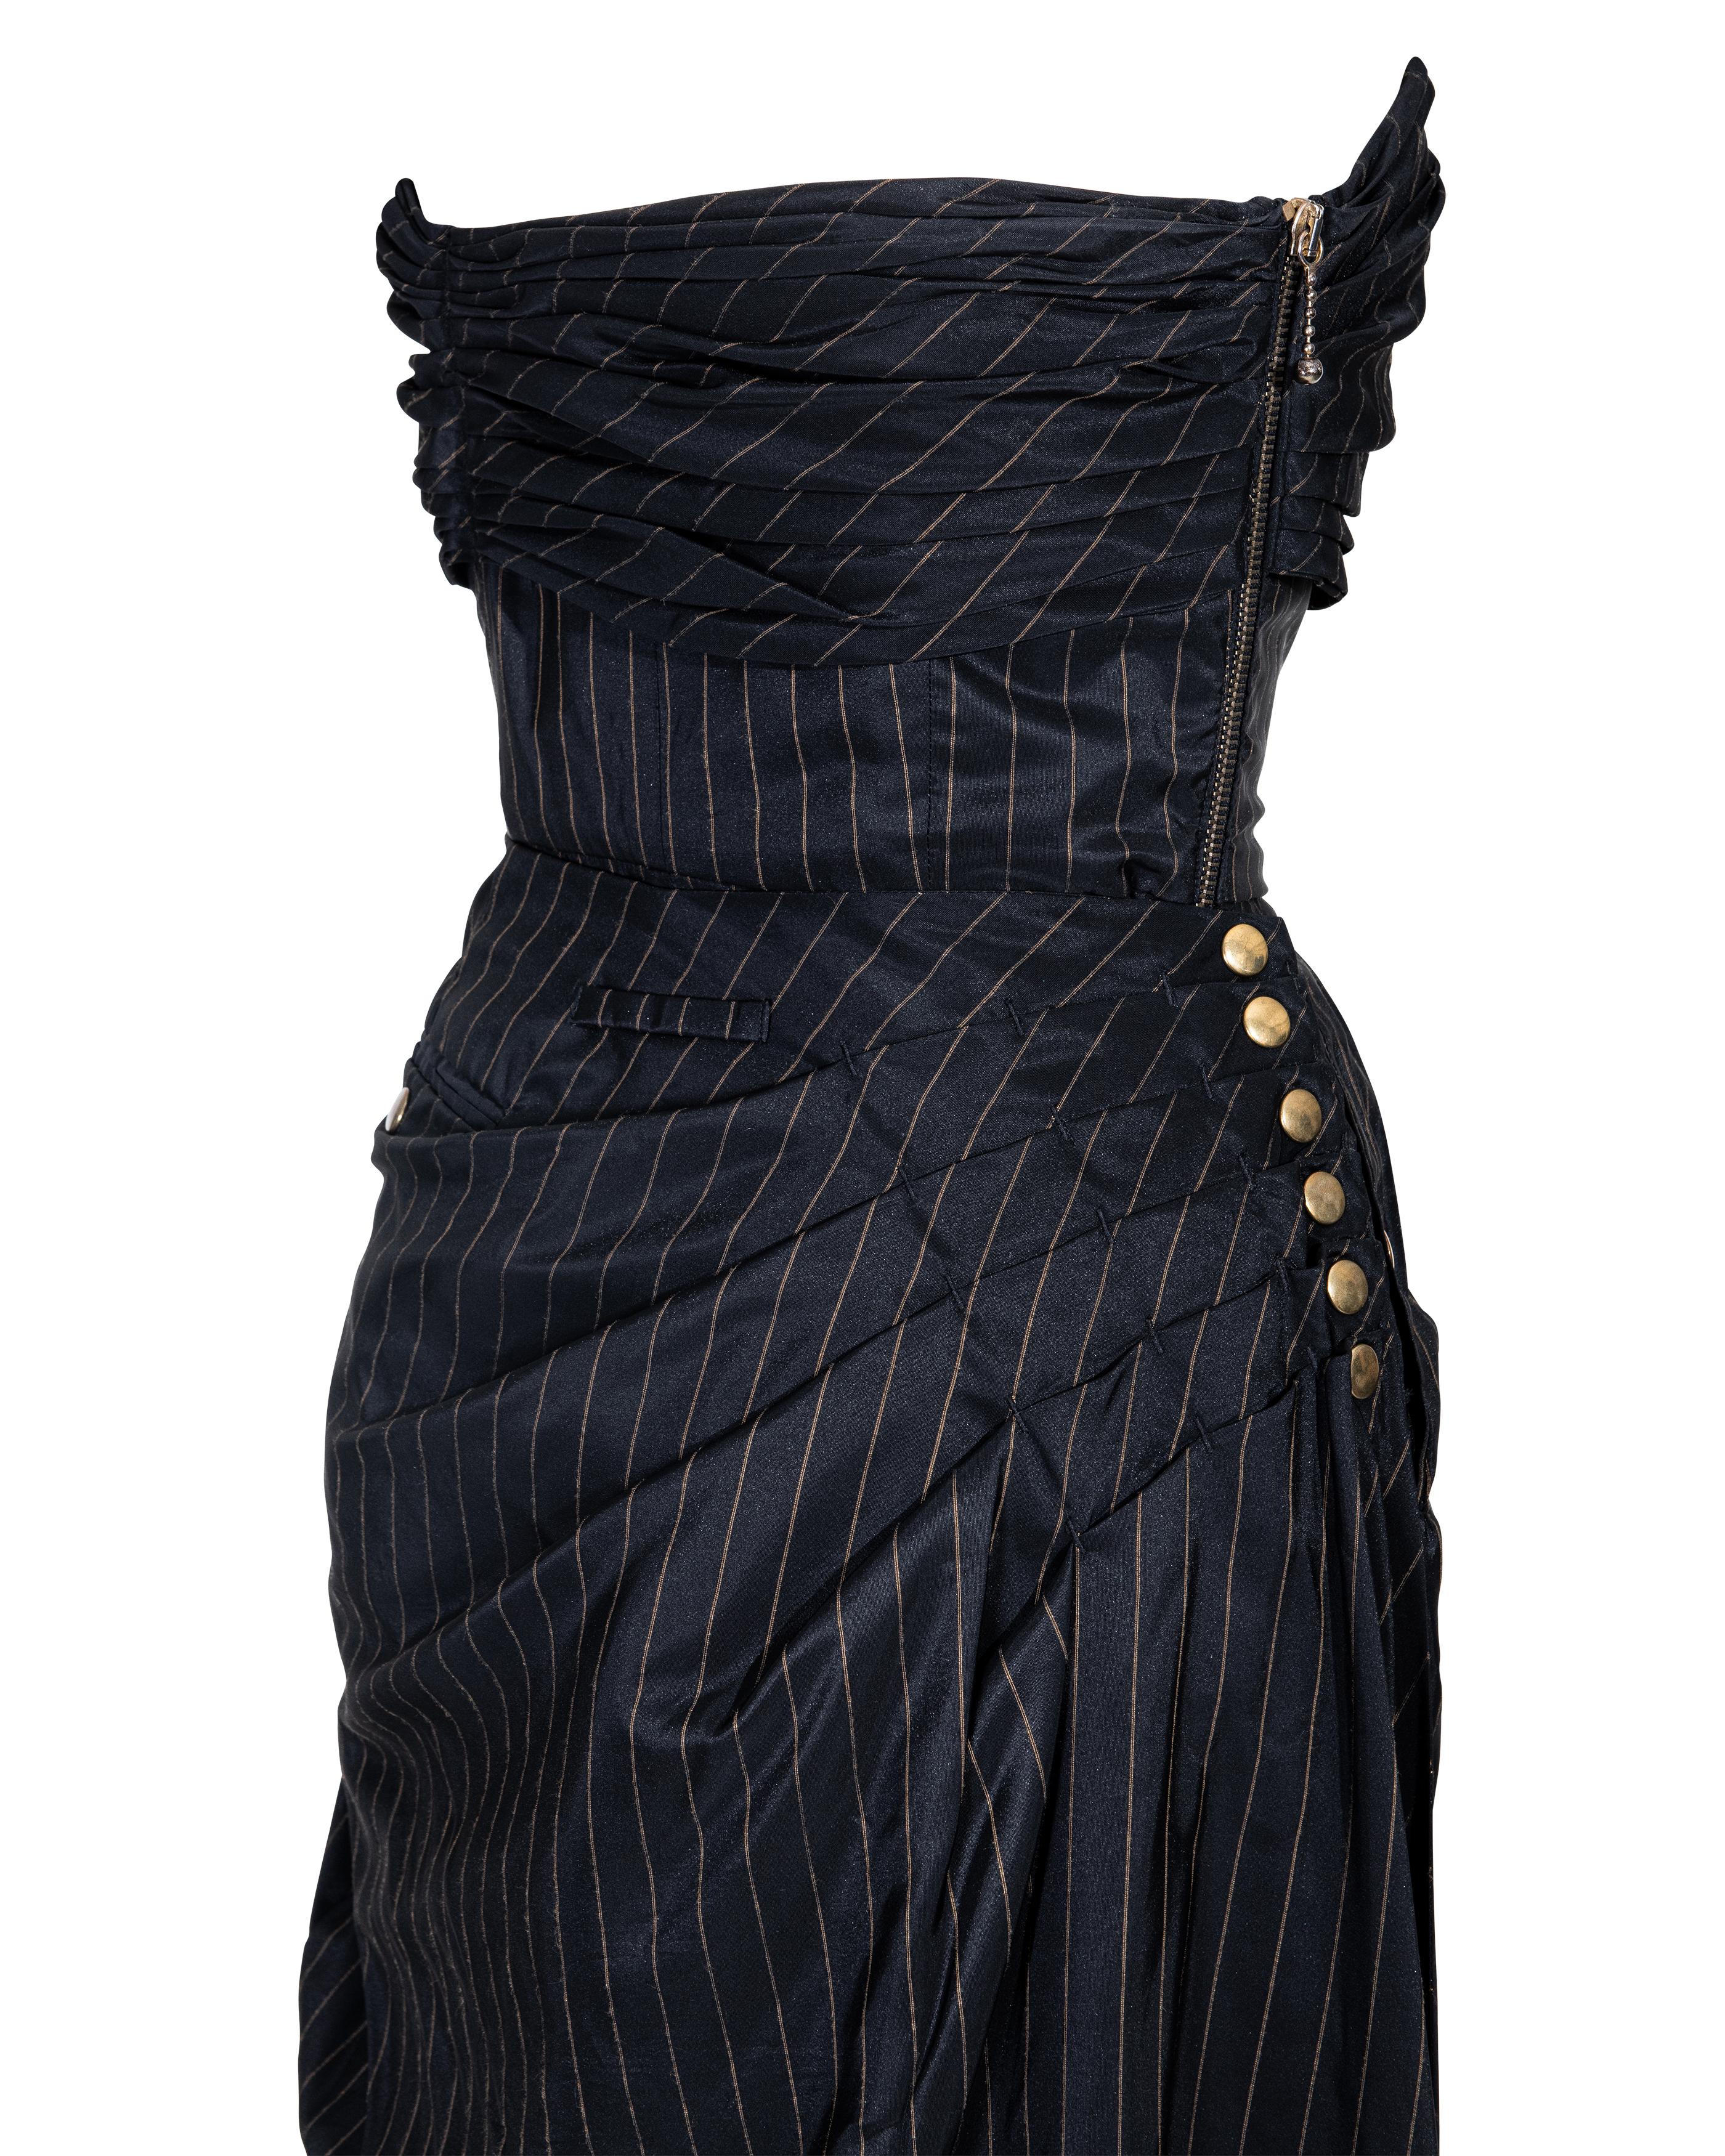 S/S 1995 Jean Paul Gaultier Pinstripe Strapless Bustle Gown 10